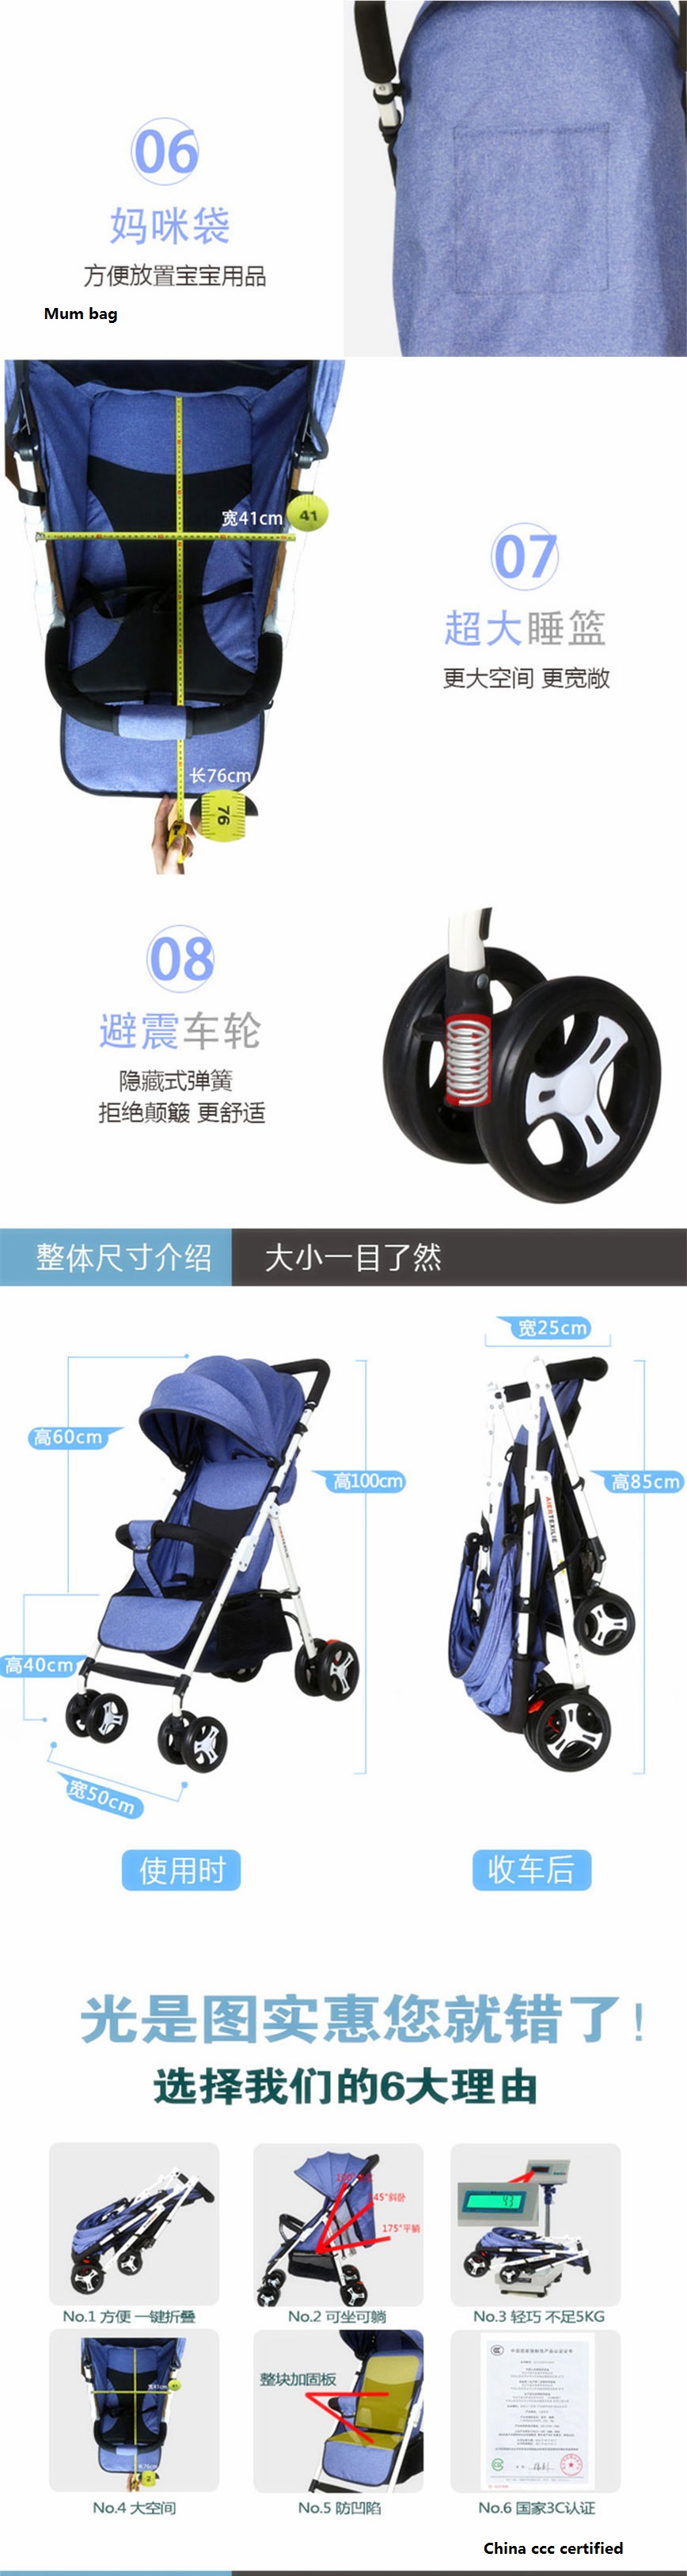 ART 503 stroller details4 sizes.jpg